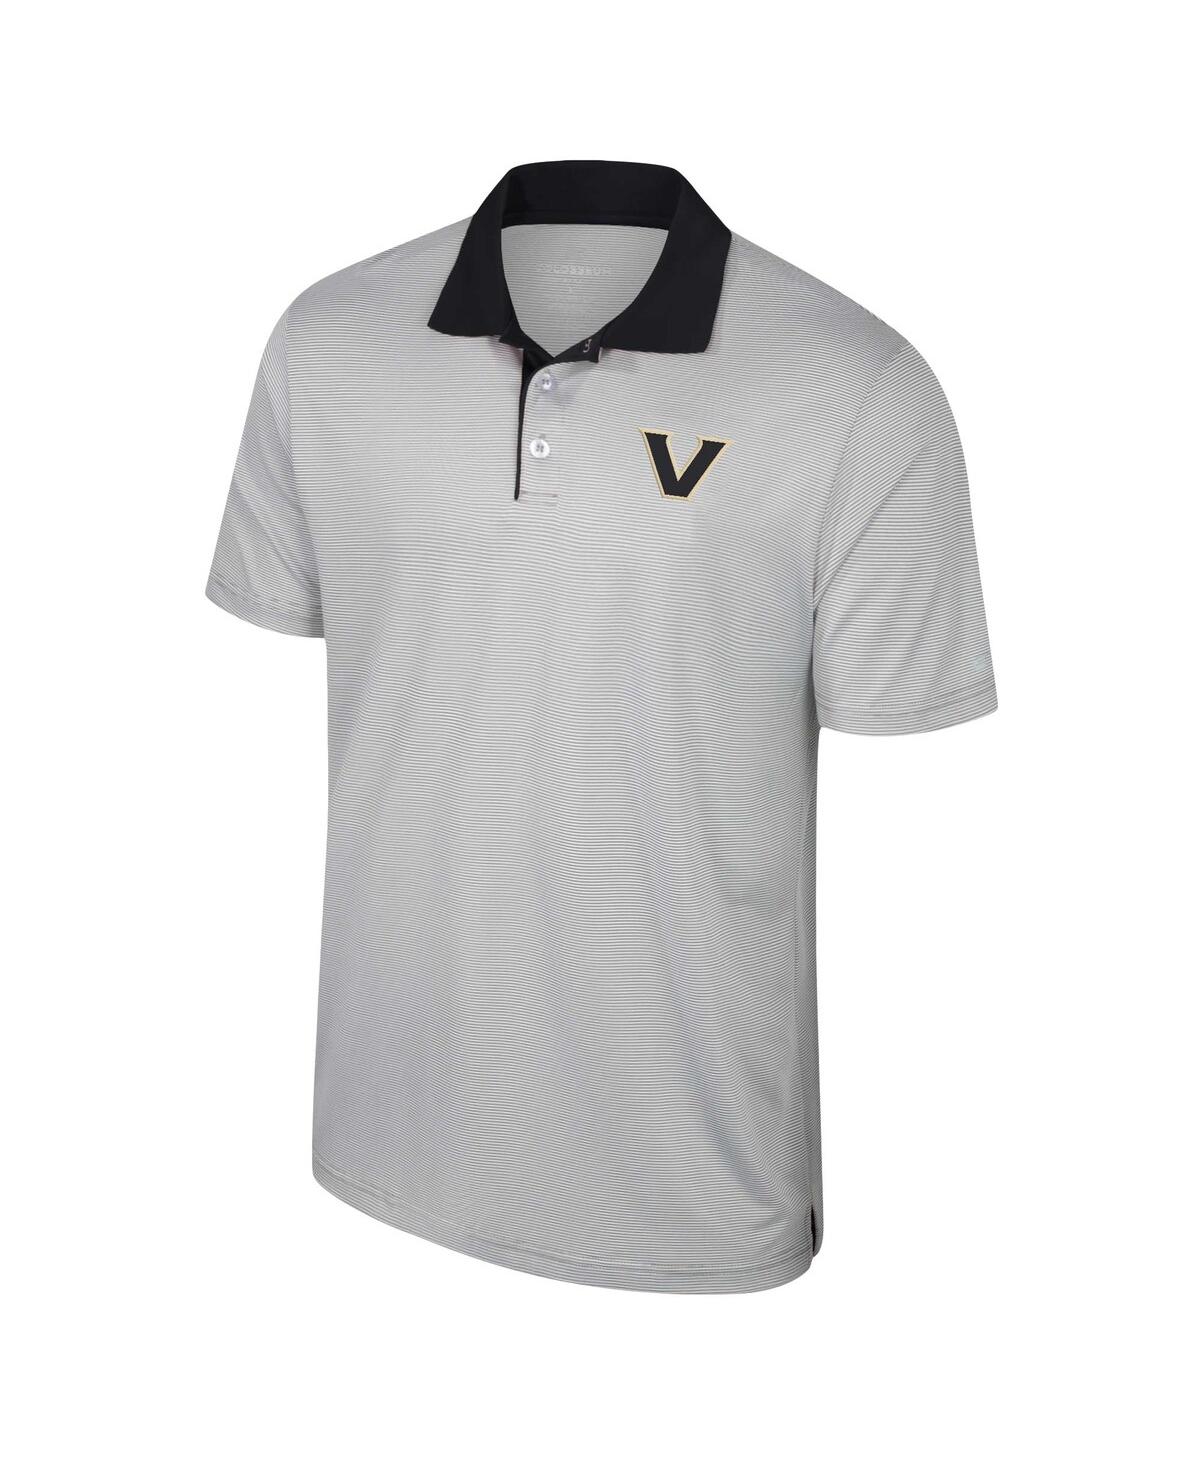 Shop Colosseum Men's  Gray Vanderbilt Commodores Tuck Striped Polo Shirt